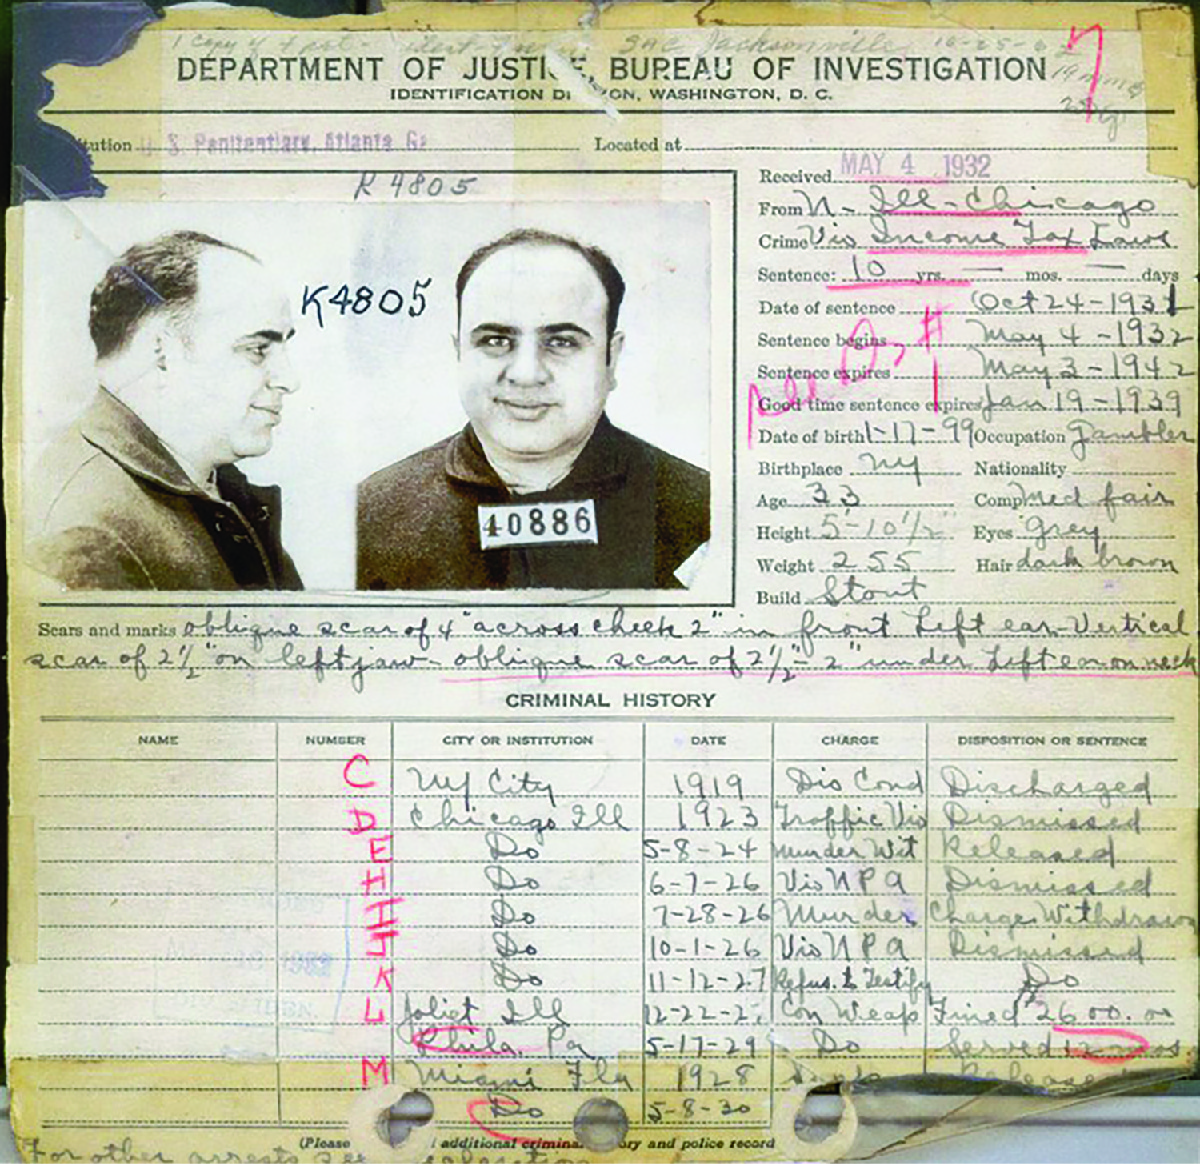 Los antecedentes penales del FBI en Al Capone en 1932 muestran los muchos cargos en su contra, la mayoría de los cuales fueron desestimados.